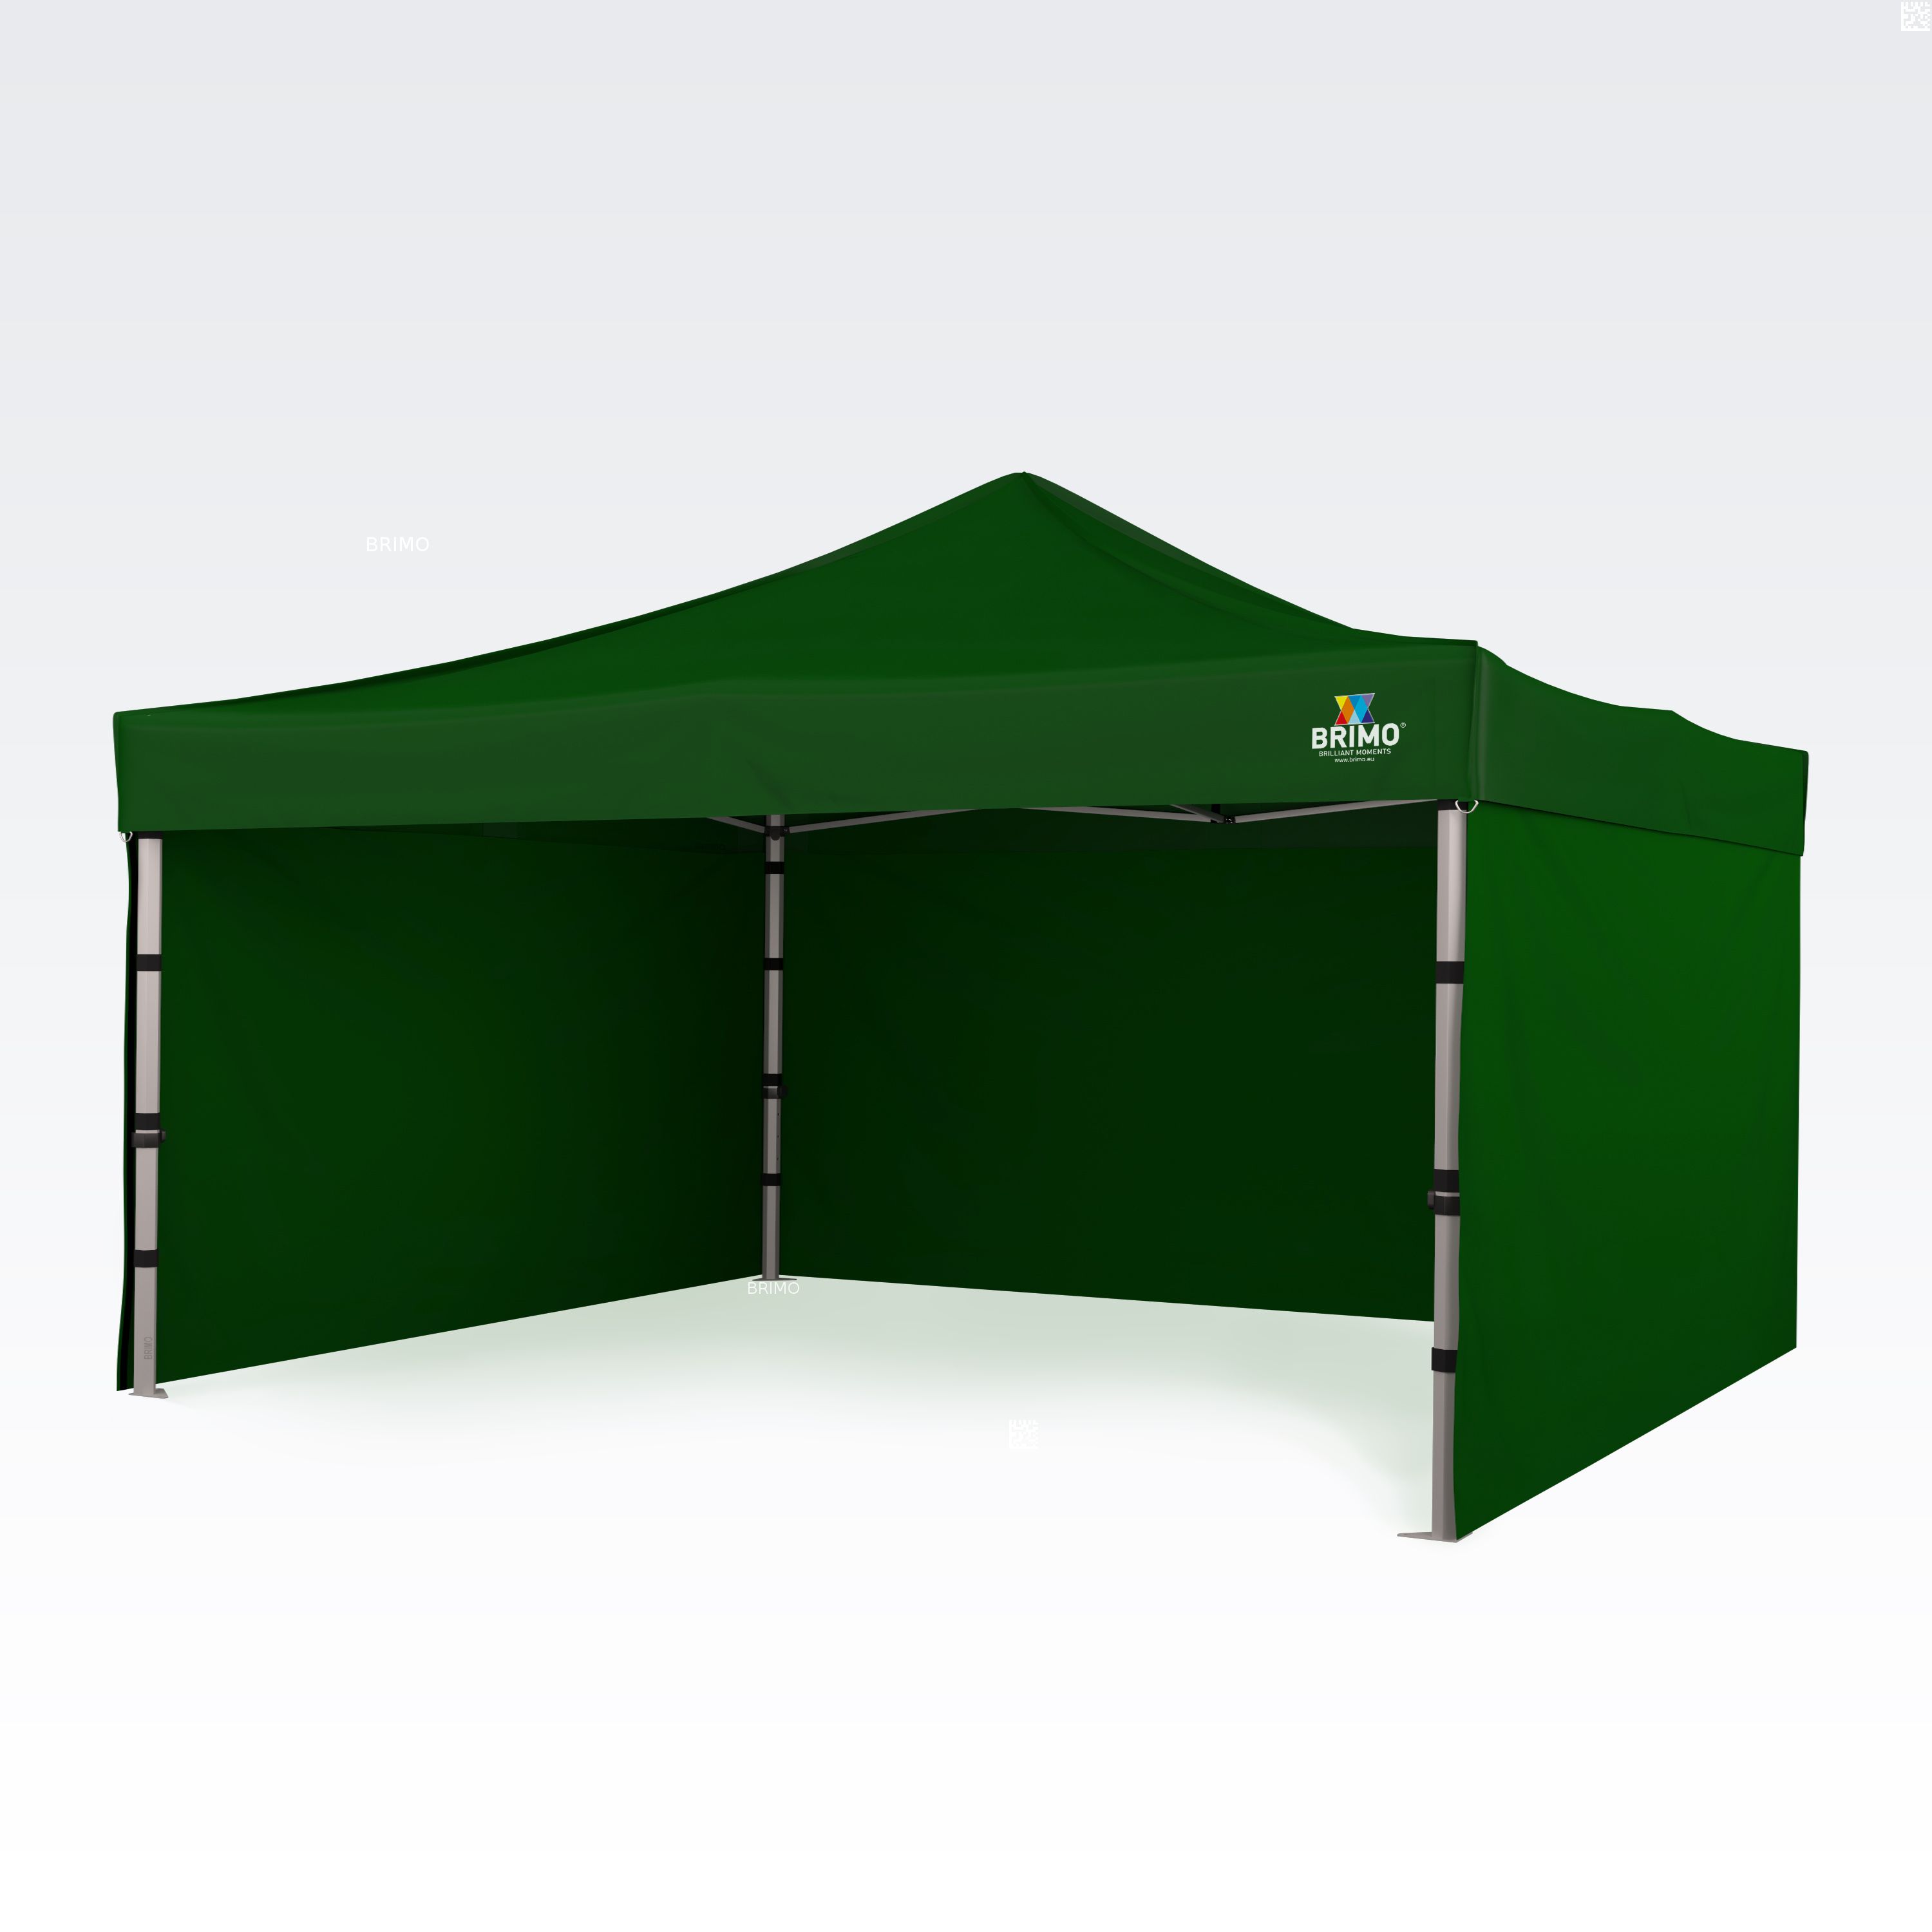 BRIMO Tente Promo 4x4m Gratuit : 3pc parois pleines, 8 sardines de tente et housse de protection + Garantie de 5 ans! vert